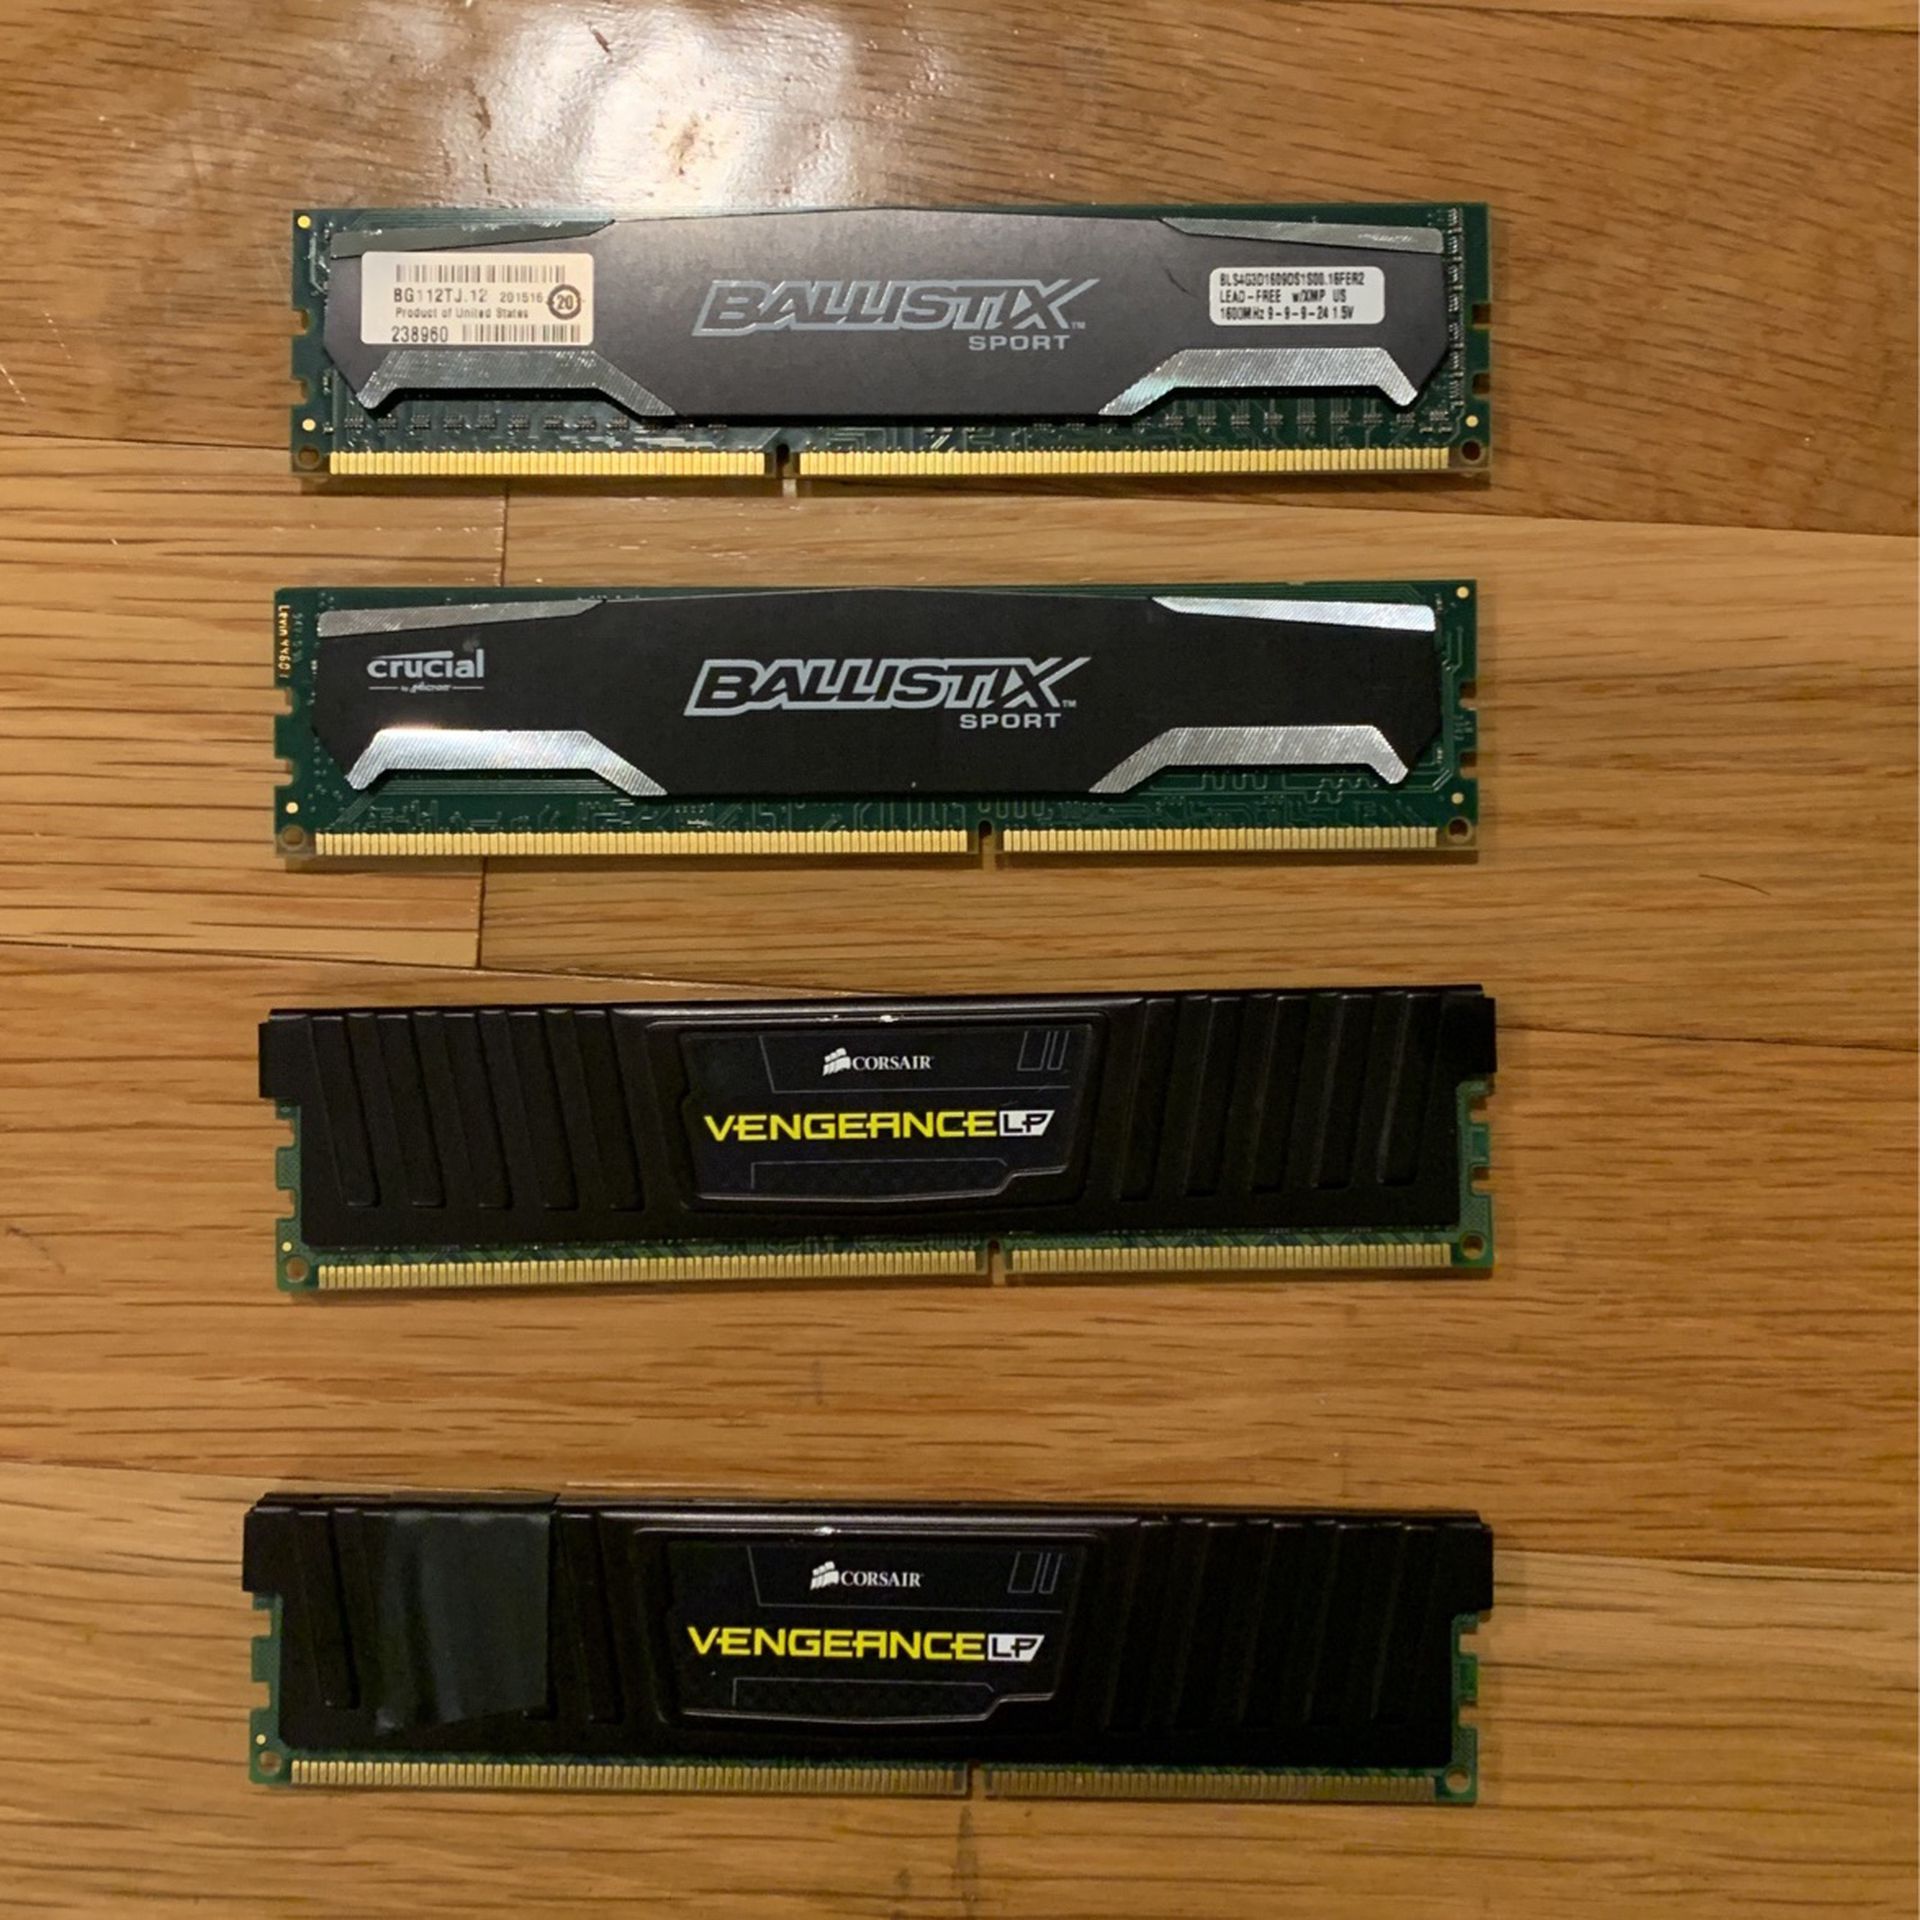 16 GB (2x4 + 2x4) DDR3 1600MHZ RAM